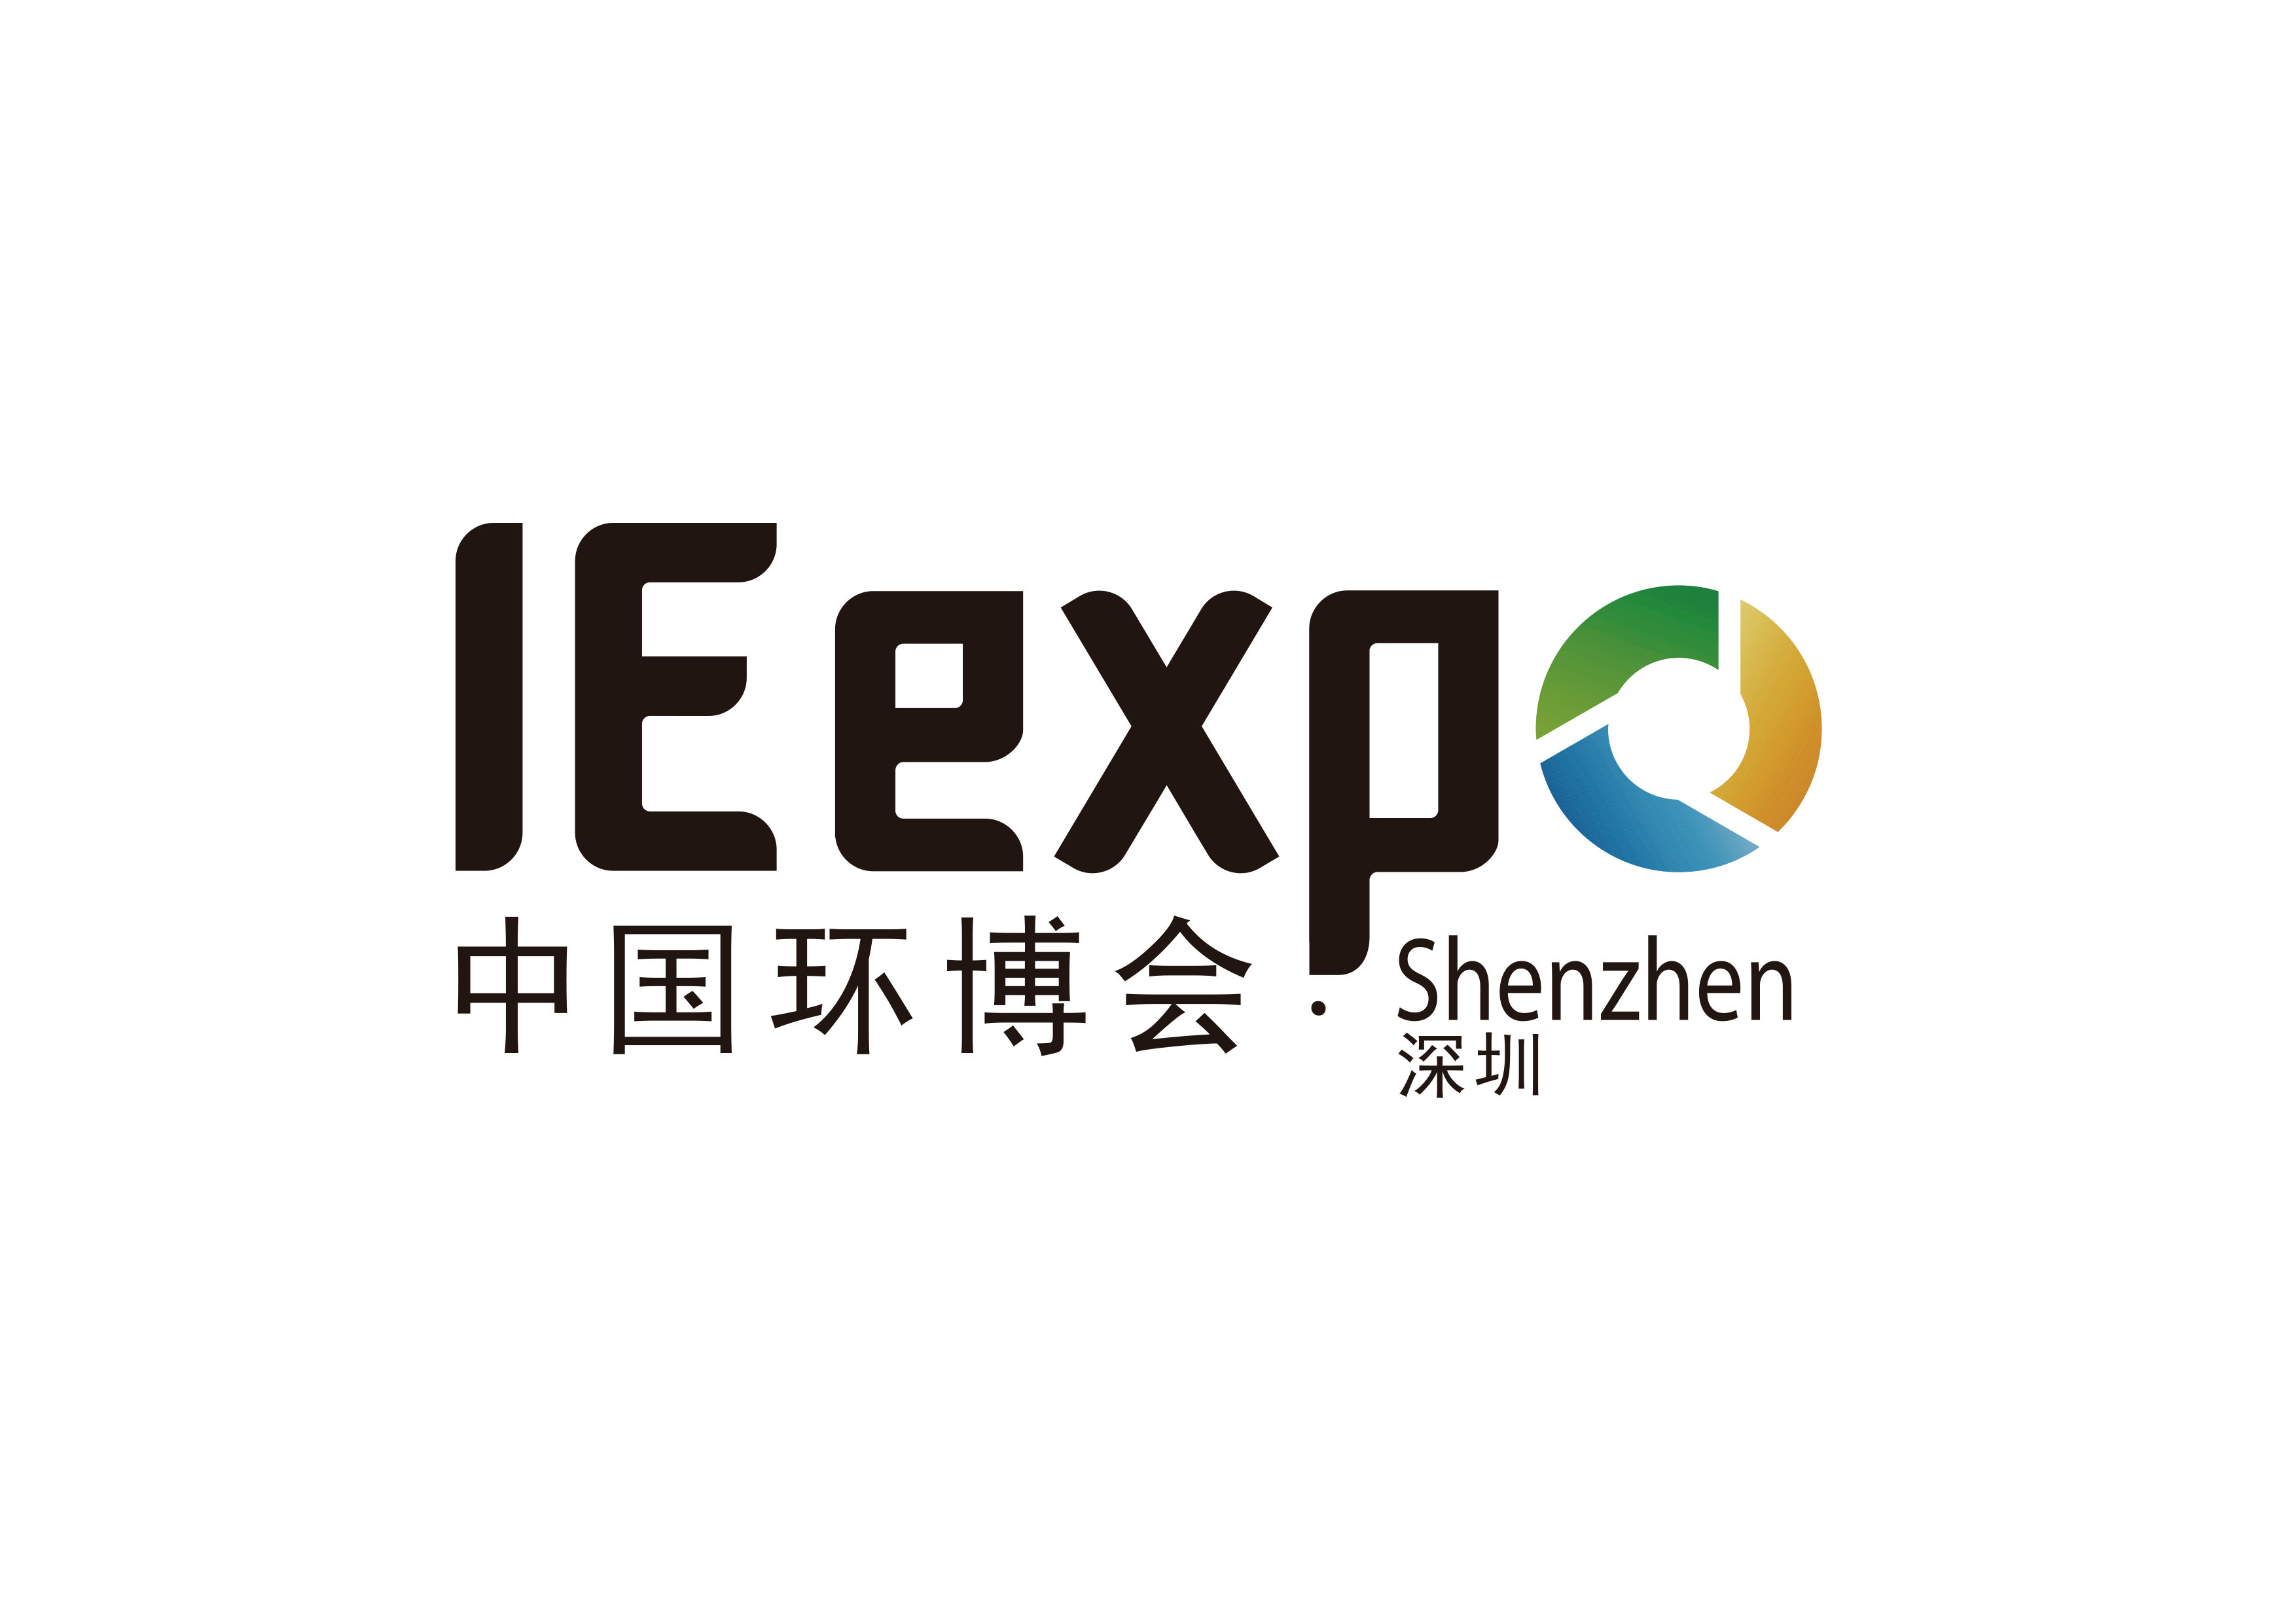 IE expo Shenzhen